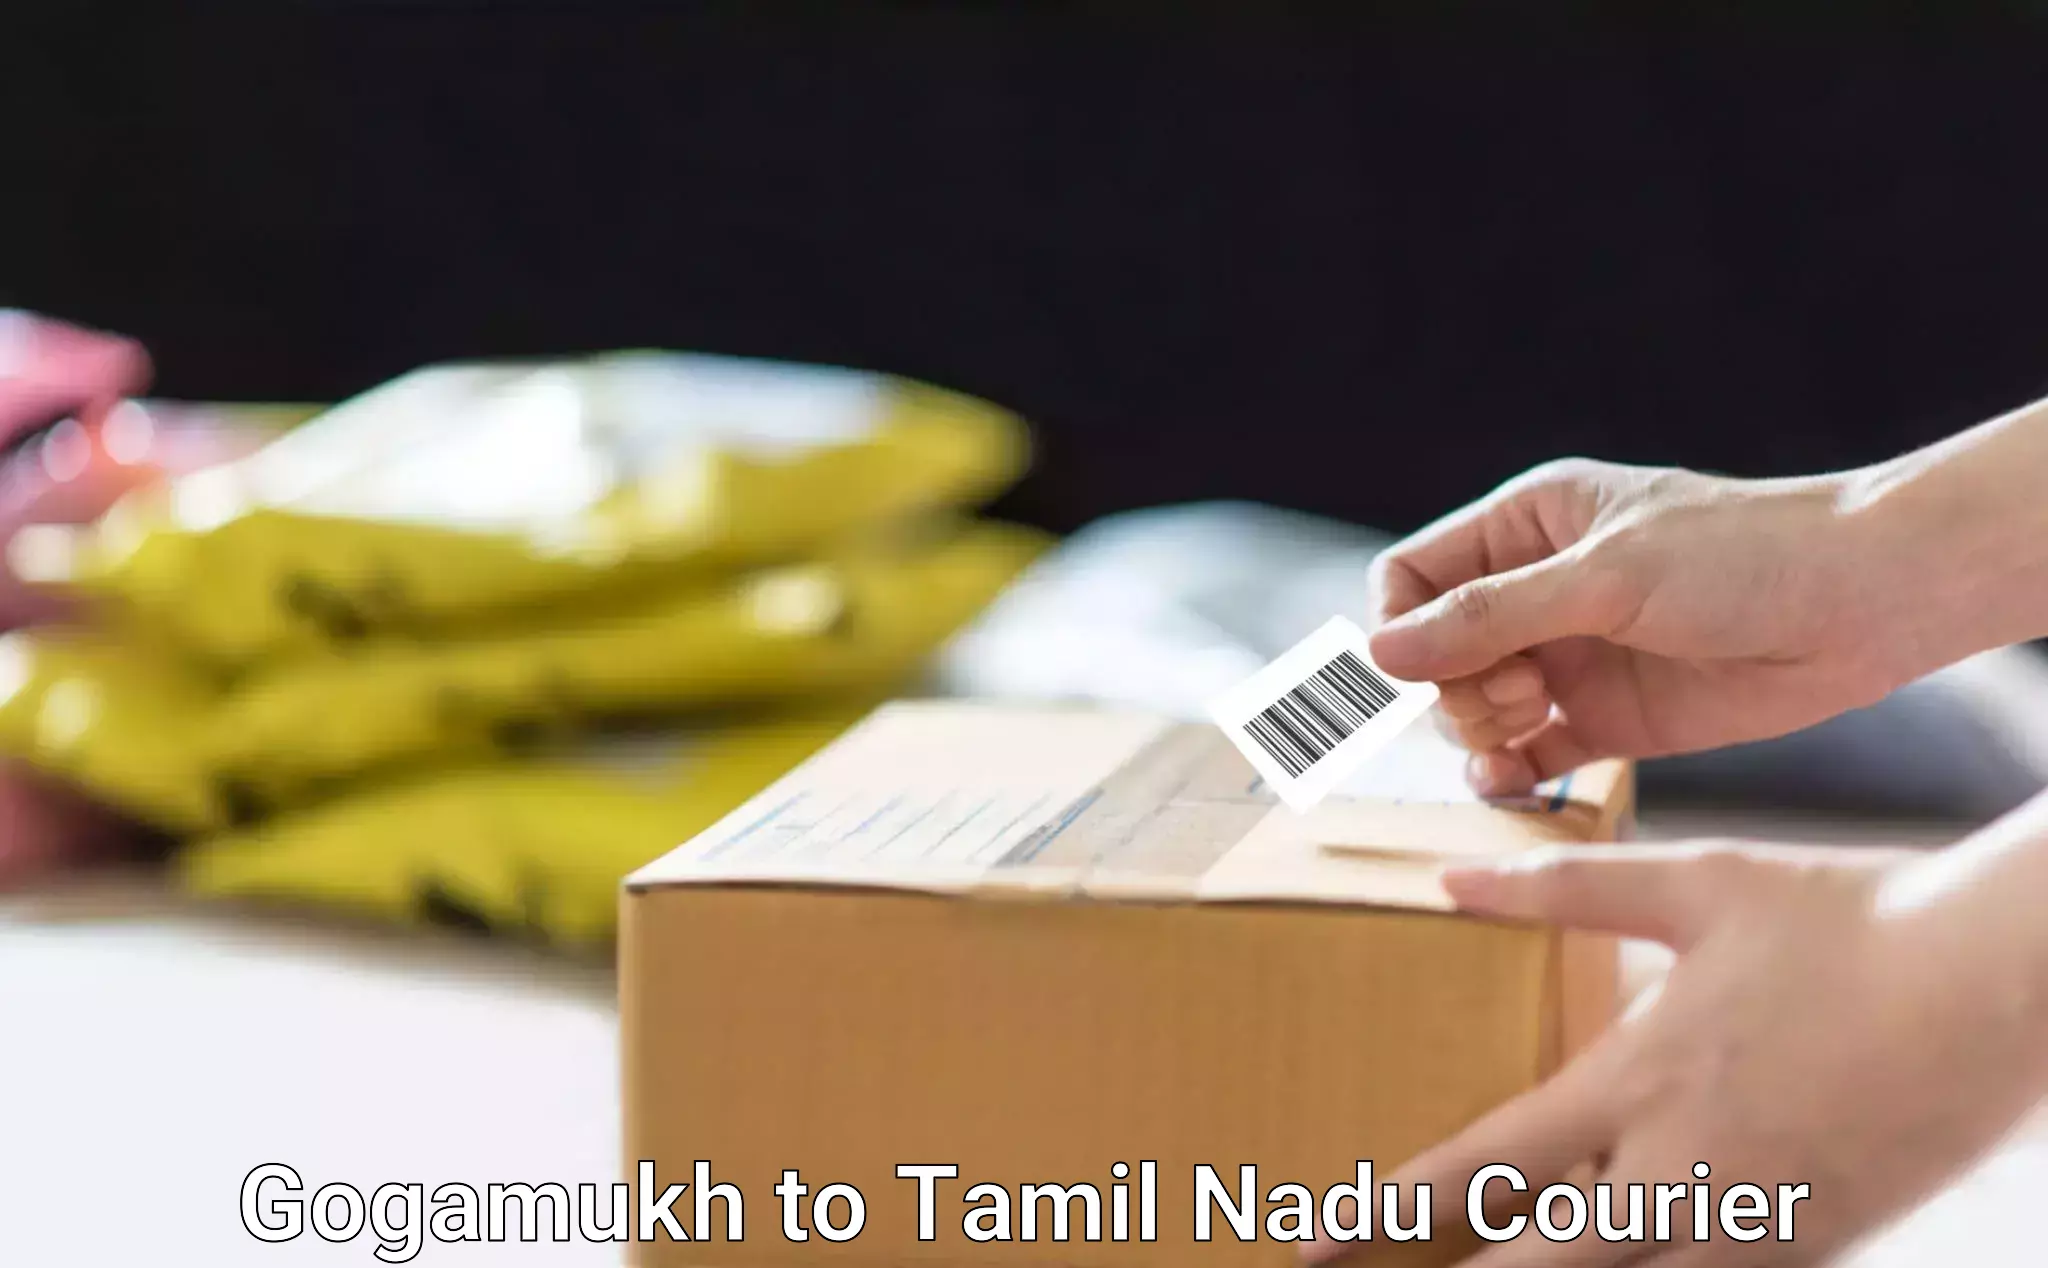 Reliable courier service Gogamukh to Vickramasingapuram